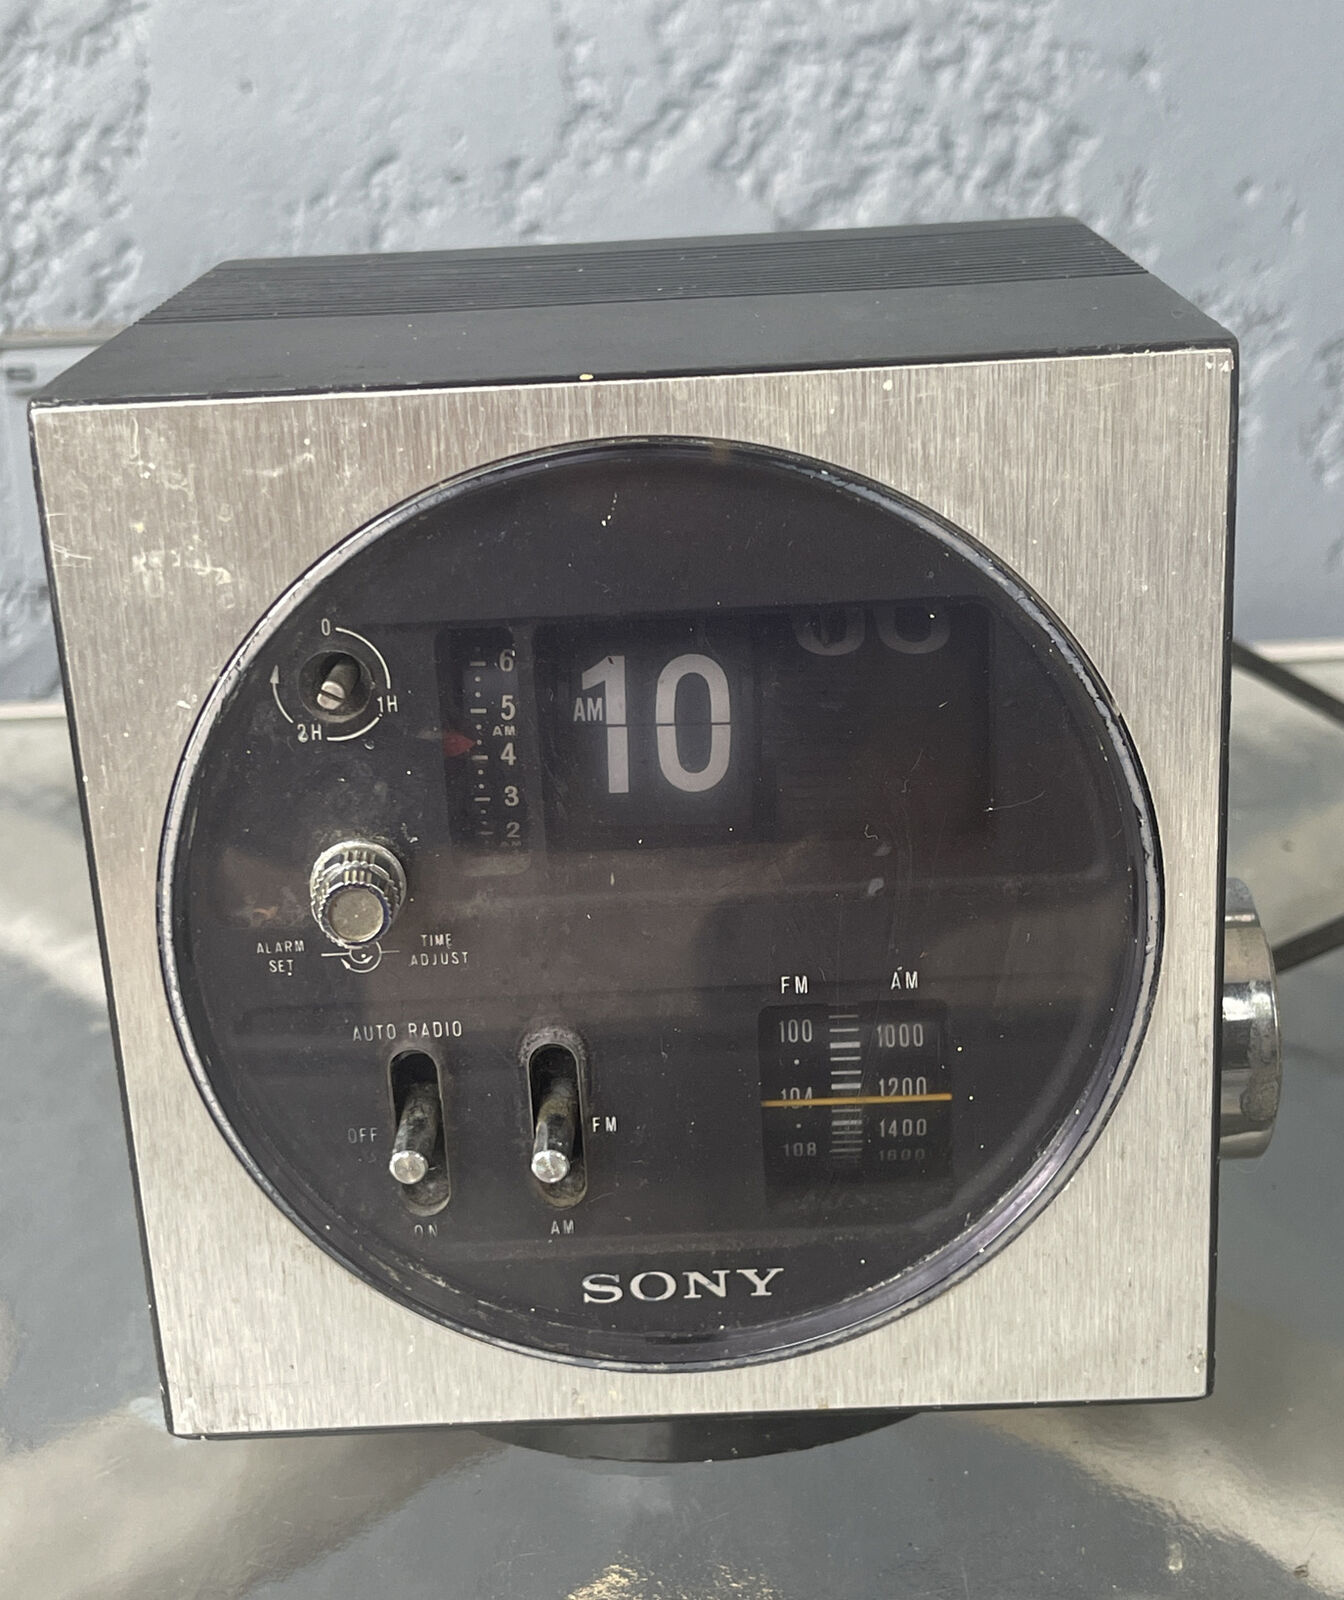 Sony TFM-C430W AM/FM Radio Alarm Clock Cube Working Tested